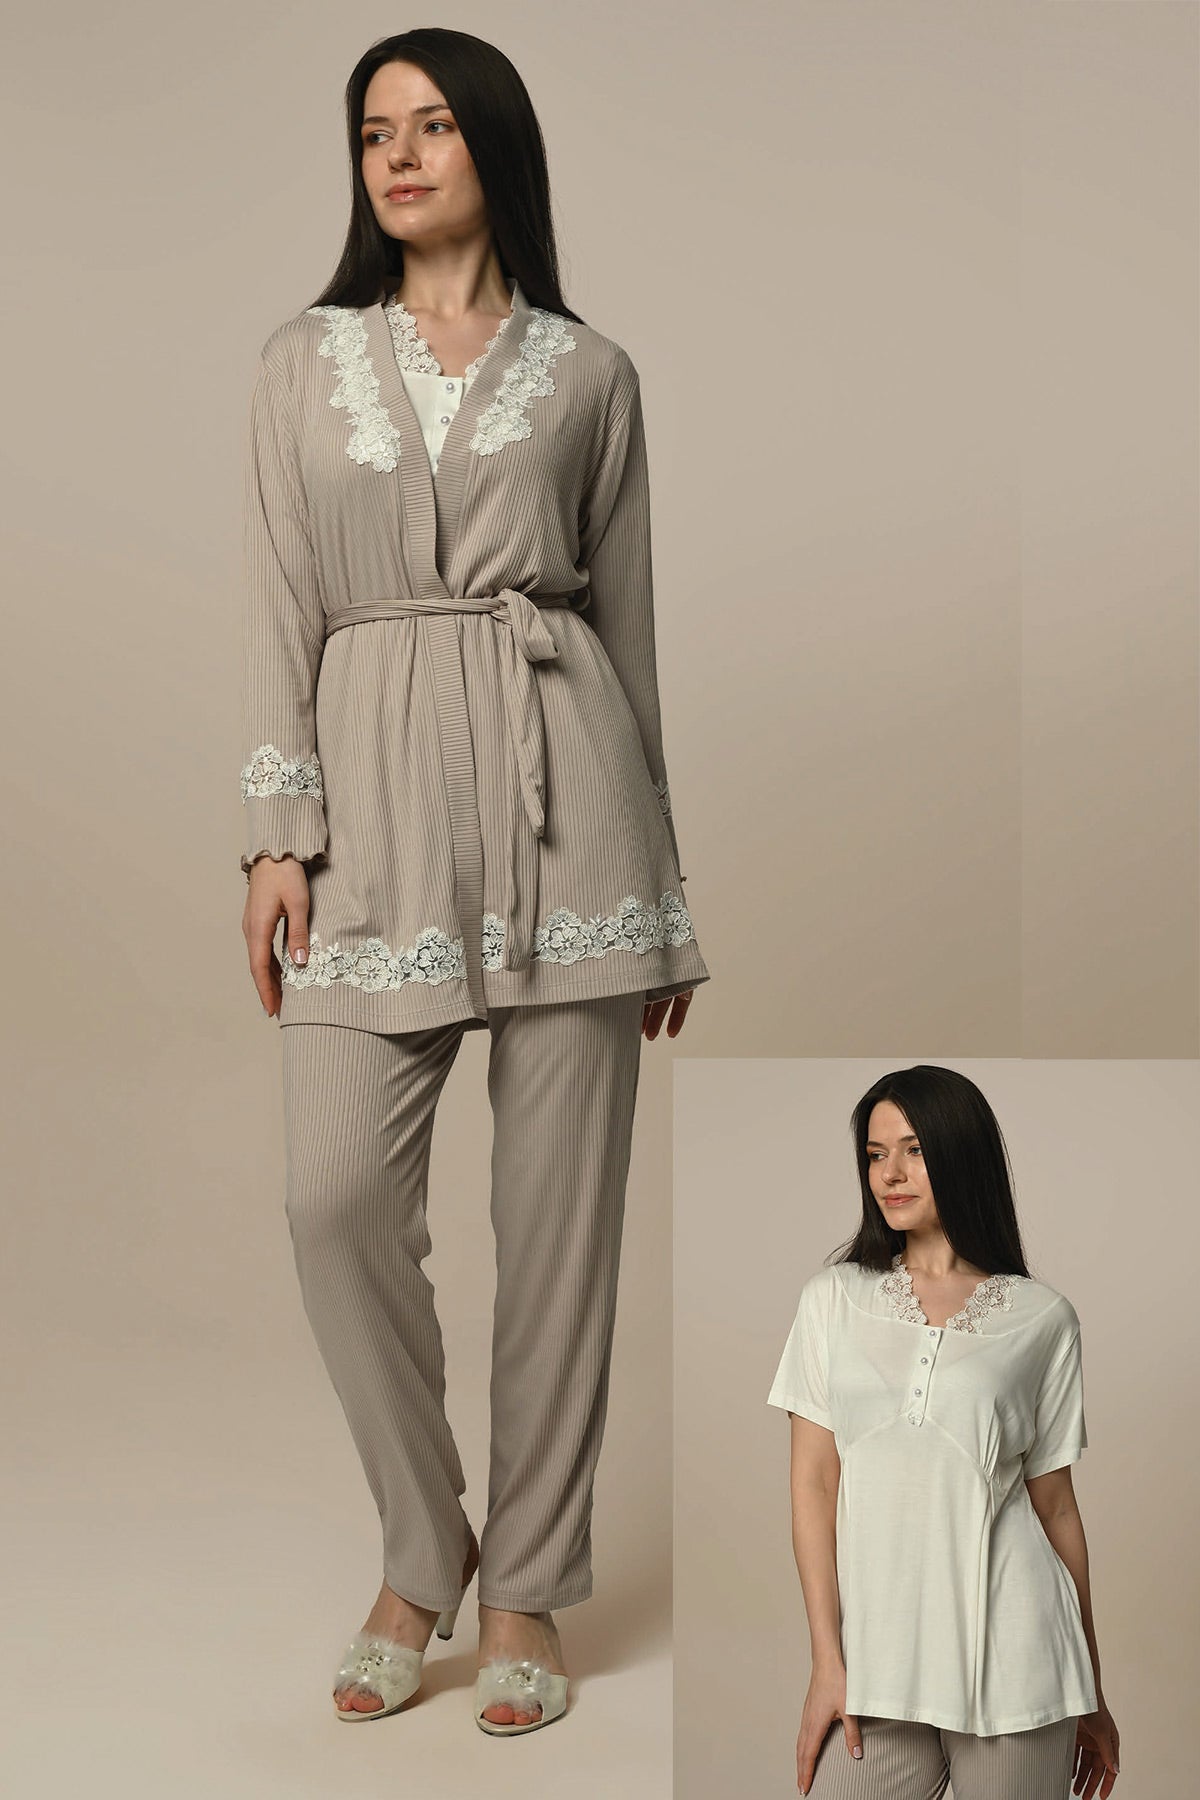 Lace Detailed 3-Pieces Maternity & Nursing Pajamas With Robe Ecru - 24314